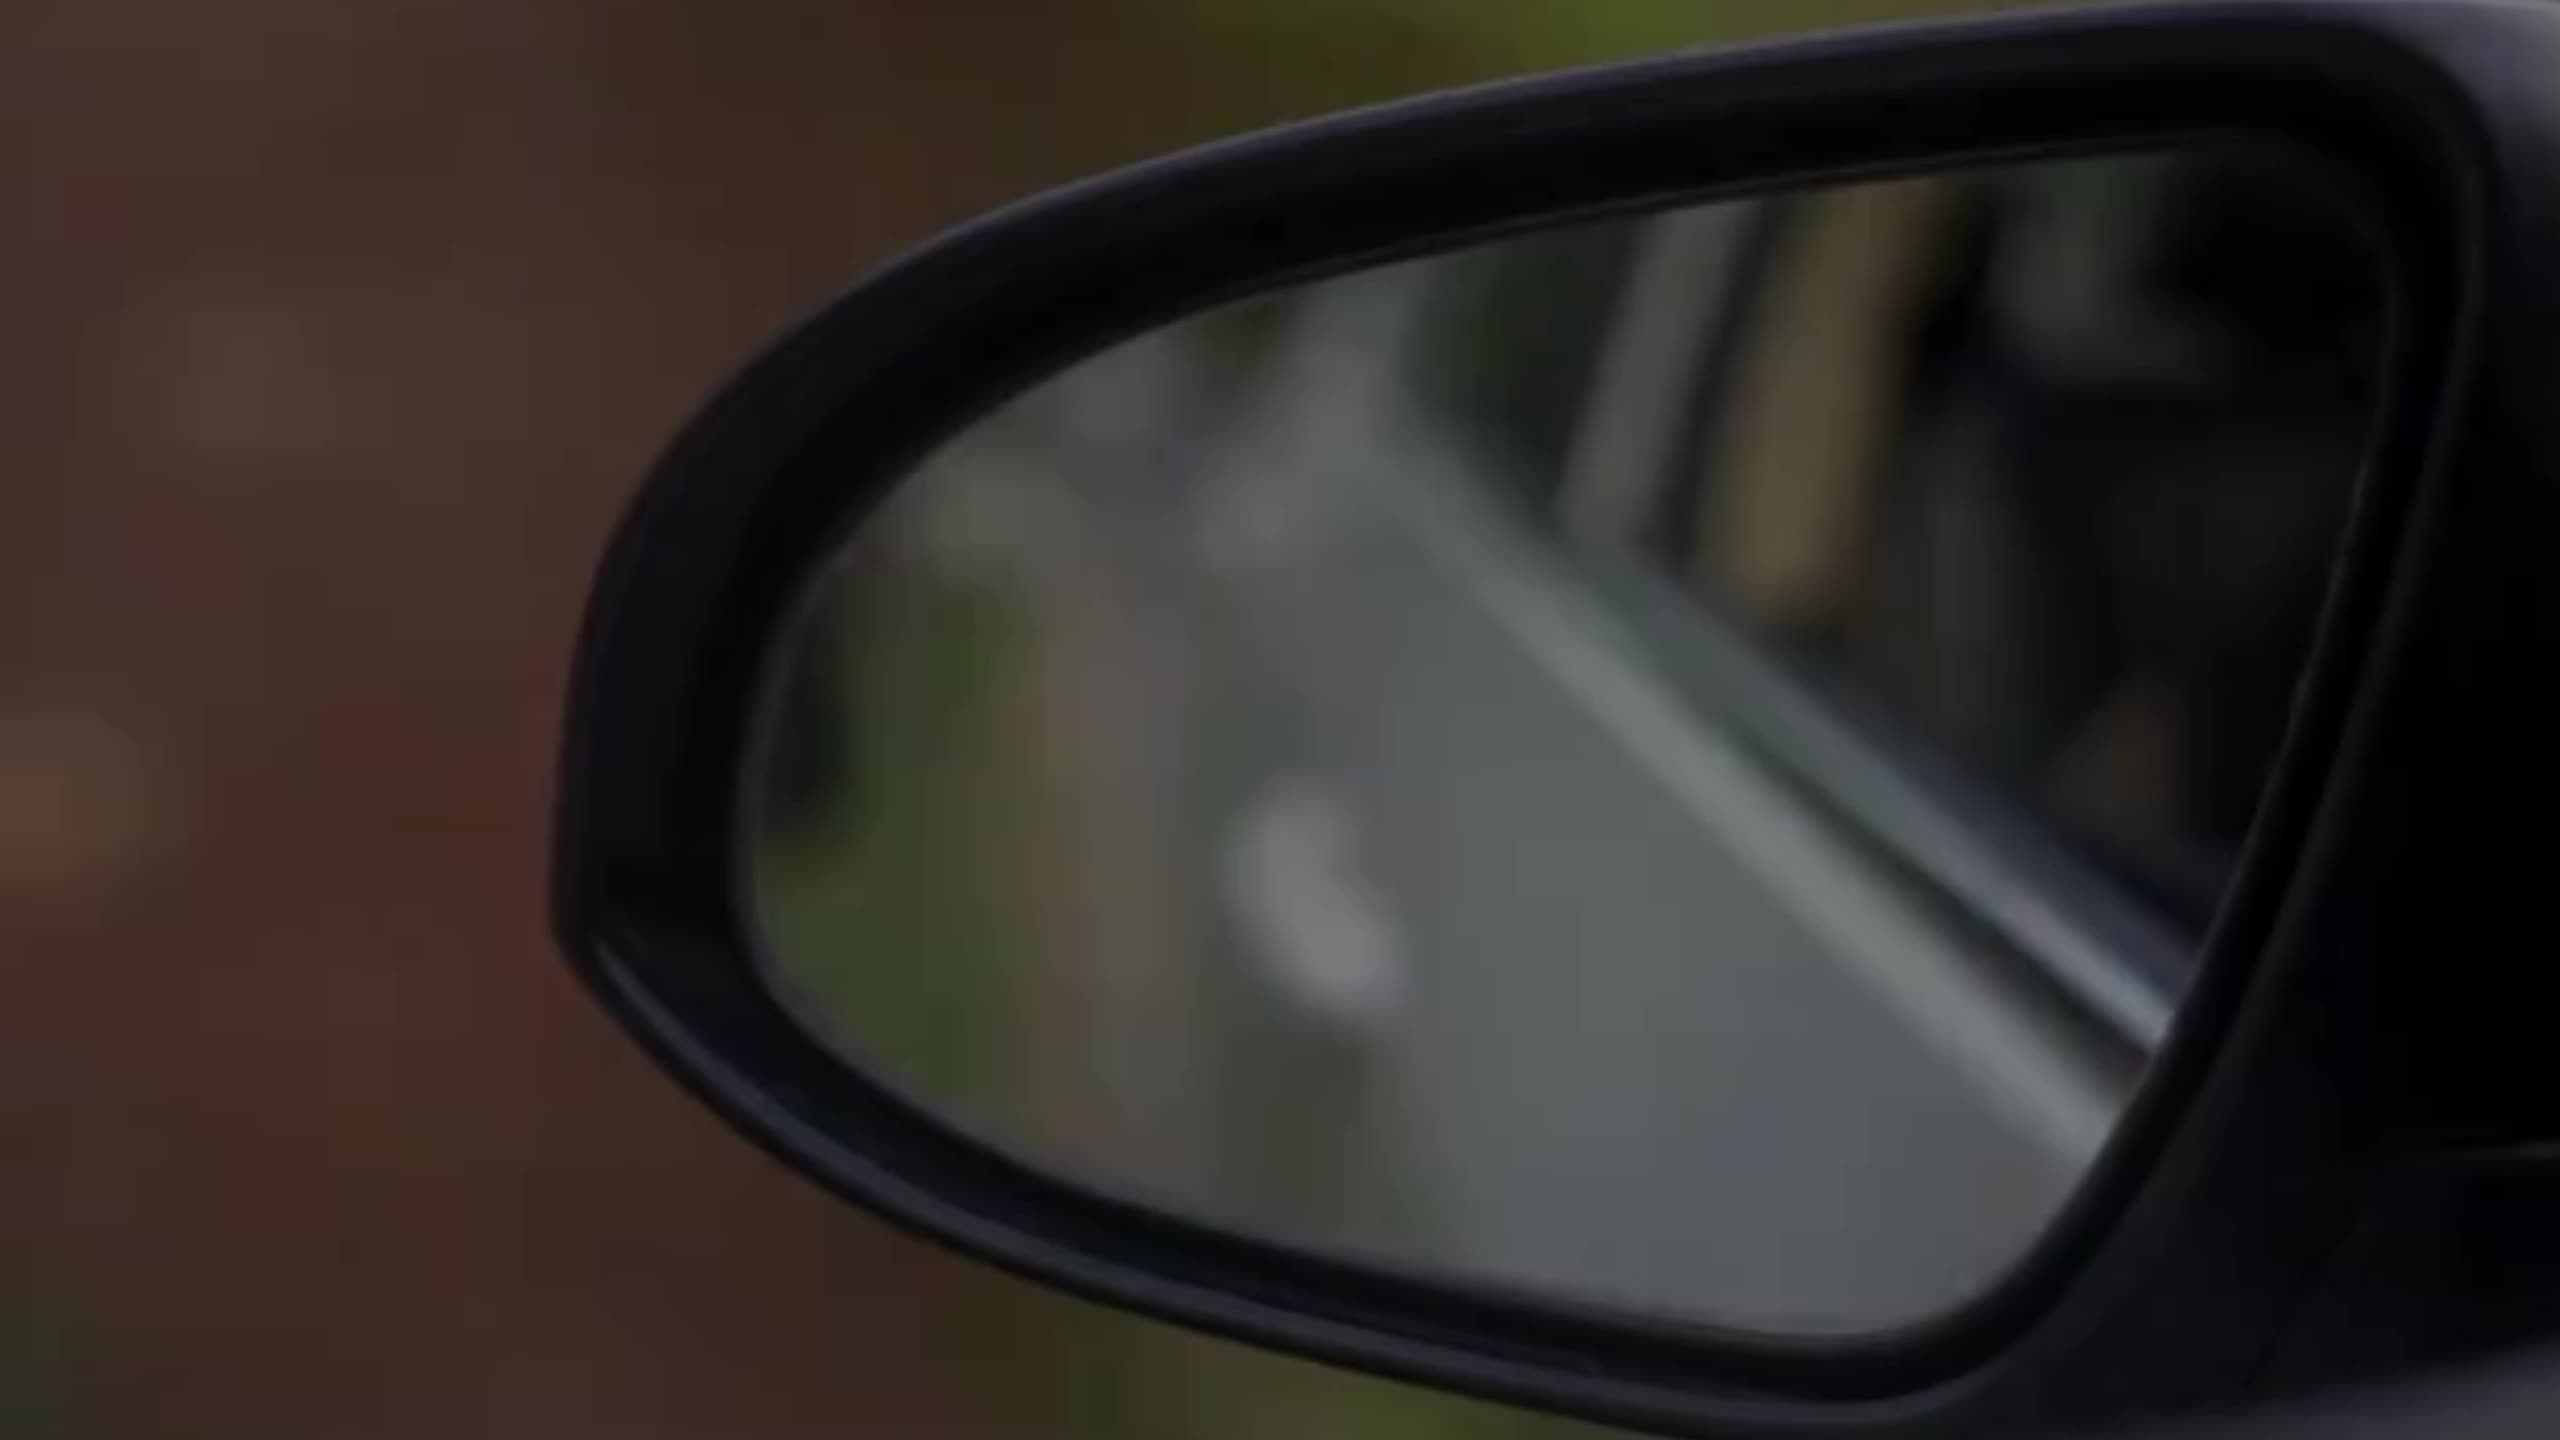 Kaufe Auto-Rückspiegel für Regen, Augenbrauen, toter Winkel, kleiner runder  Spiegel, 360 Grad Weitwinkel, rahmenloser Parkhilfsspiegel